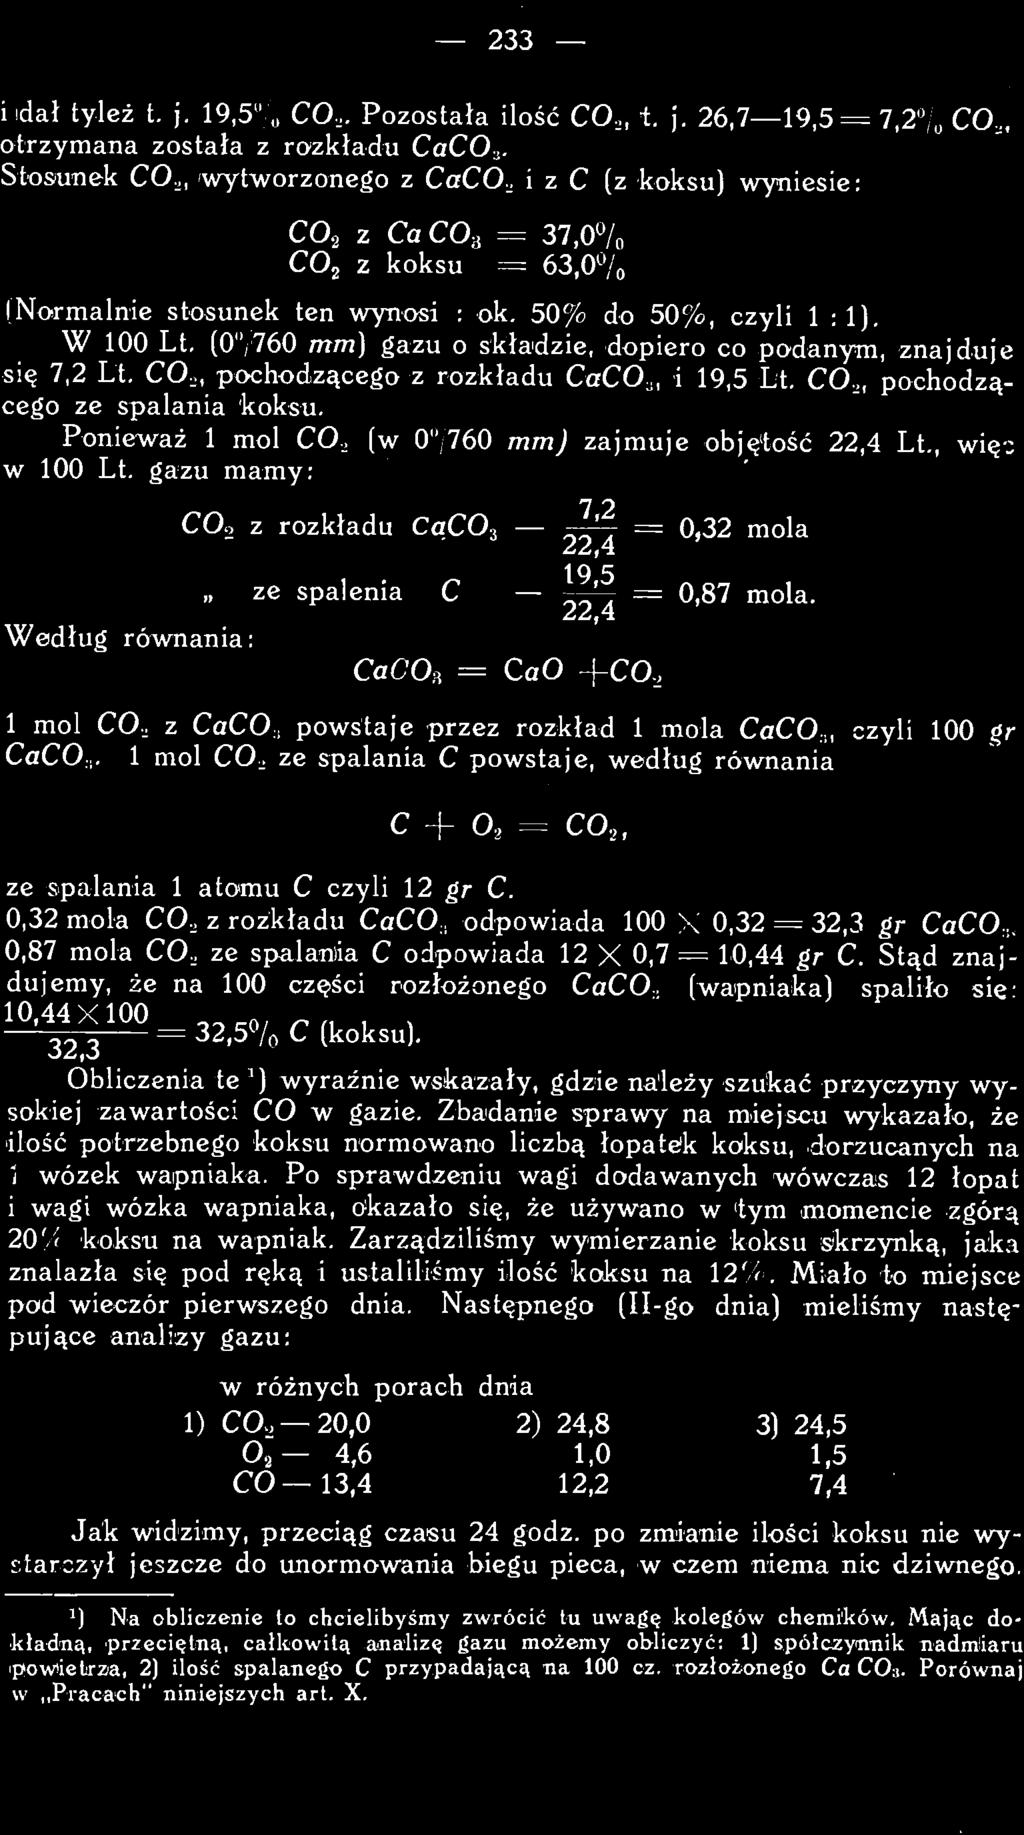 1 mol CO, z CaCO:, powstaje przez rozkład 1 mola CaCO,, czyli 100 gr CaCO,. 1 mol CO, ze spalania C powstaje, według równania c + O, = CO,, ze spalania 1 atomu C czyli 12 gr C.